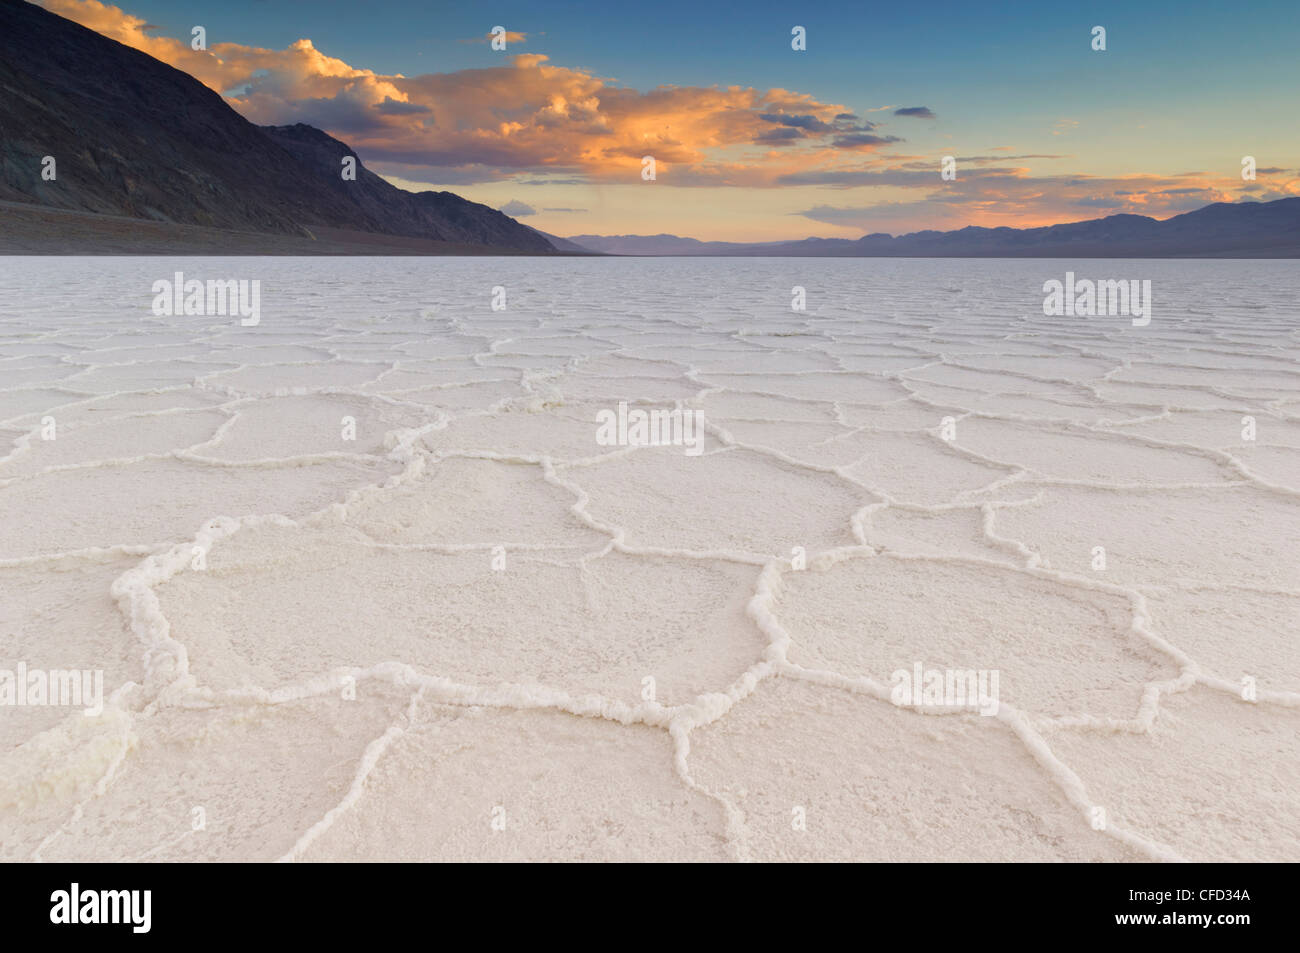 Salzpfanne Polygone an Badwater Basin, Death Valley Nationalpark, Kalifornien, USA Stockfoto